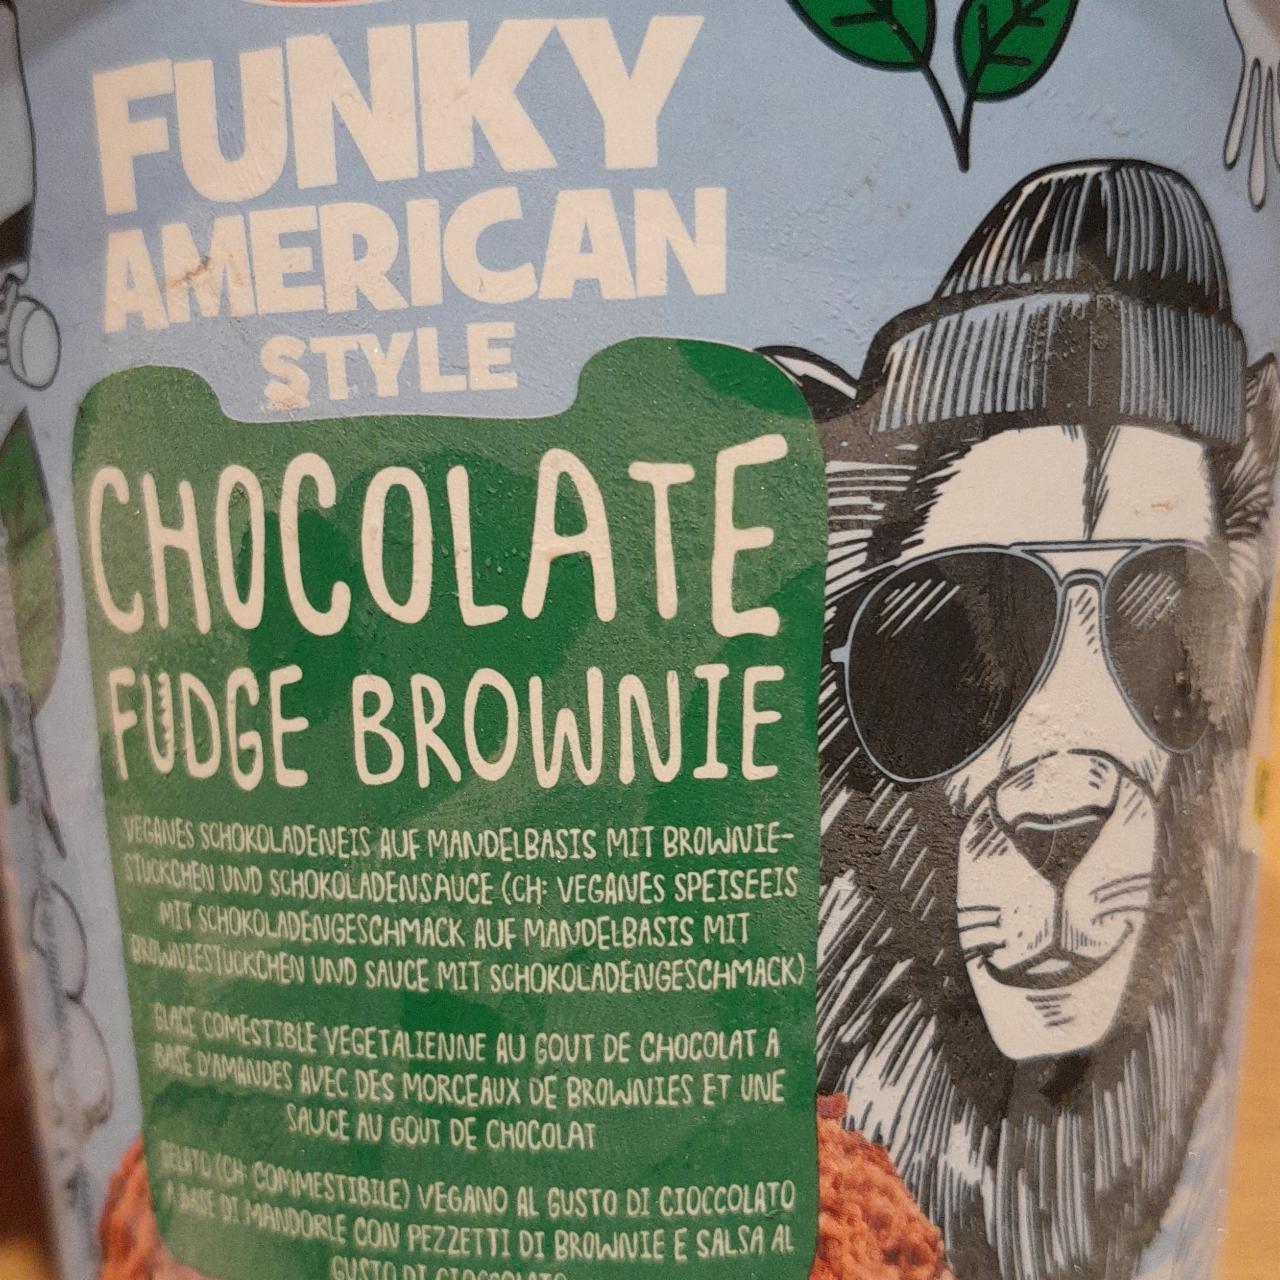 Fotografie - Funky American Style Chocolate Fudge Brownie Grandessa